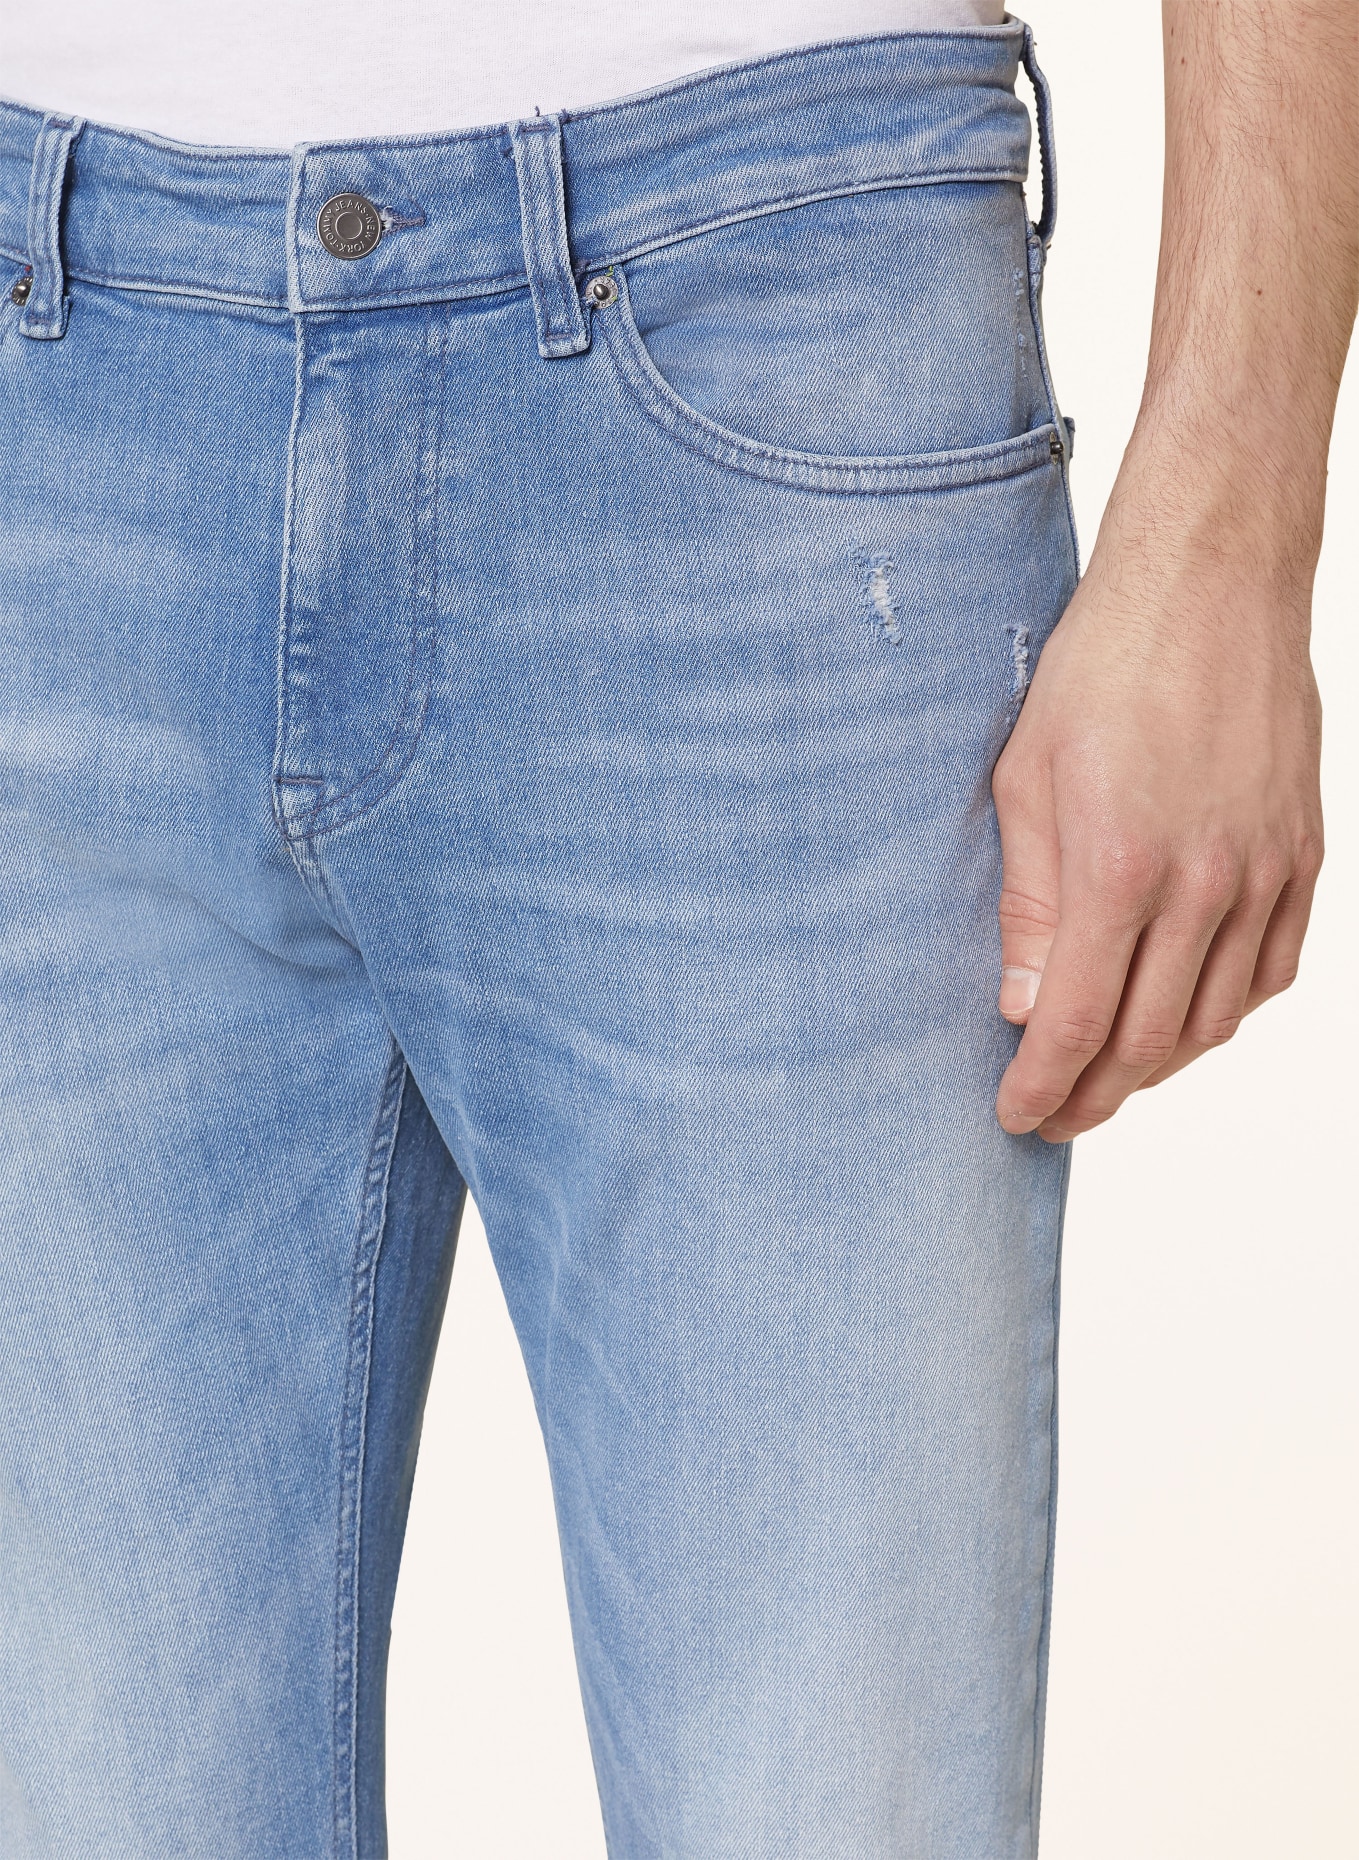 TOMMY JEANS Jeans AUSTIN Slim Tapered Fit, Farbe: 1A5 Denim Medium (Bild 5)